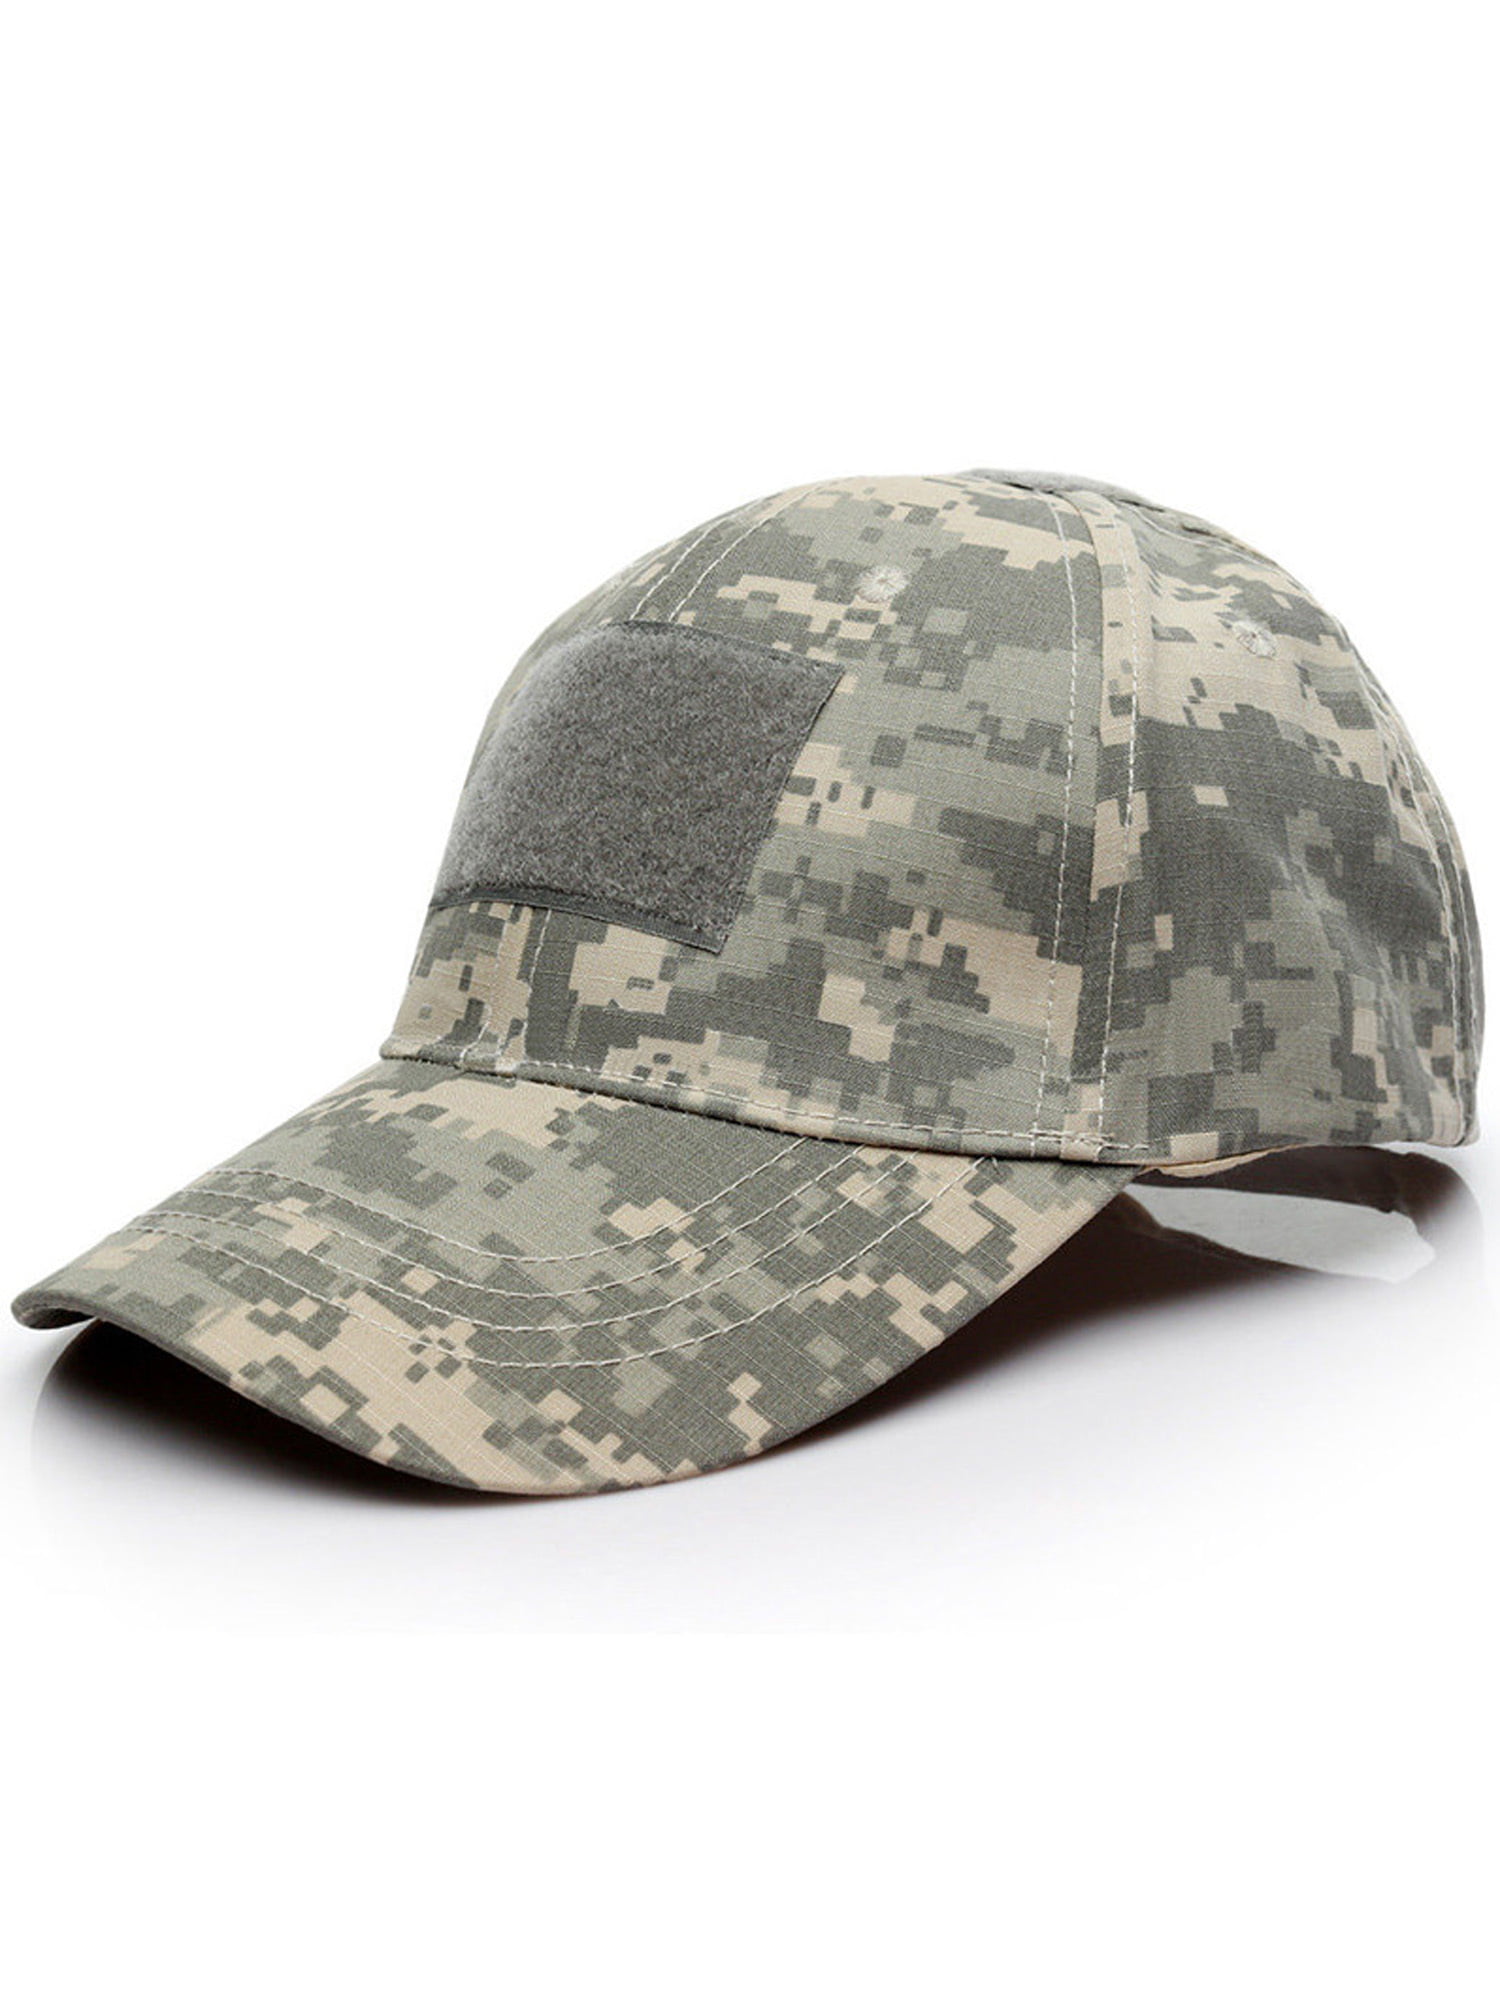 Men's Women's Camo Snapback Baseball Caps Military Combat Sport Hats - Walmart.com